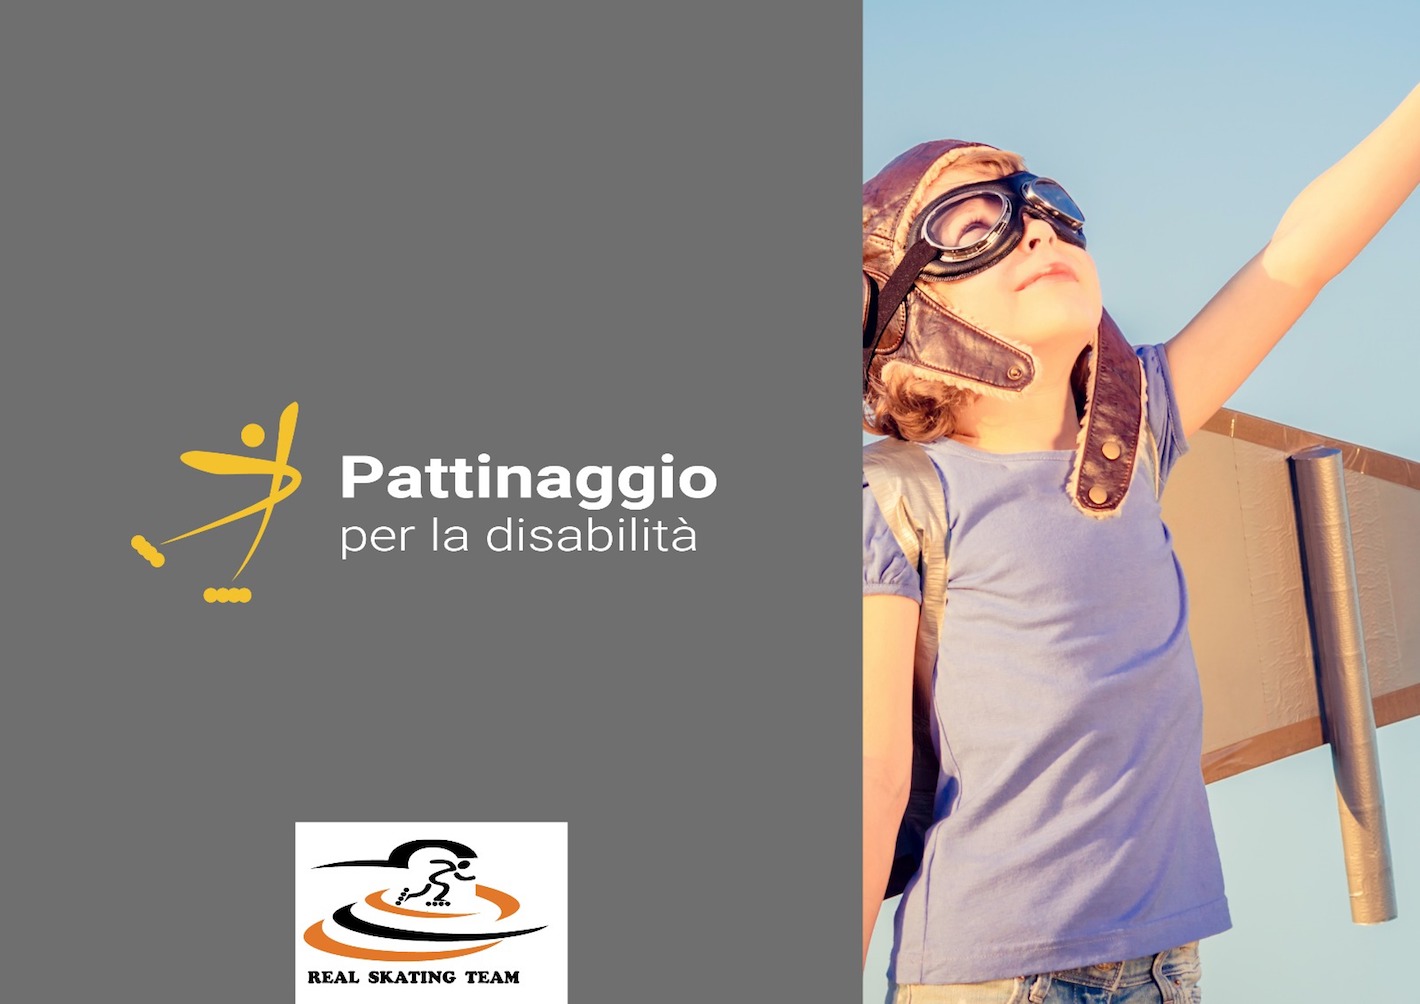 images/Pattinaggio_per_la_disabilità.jpg